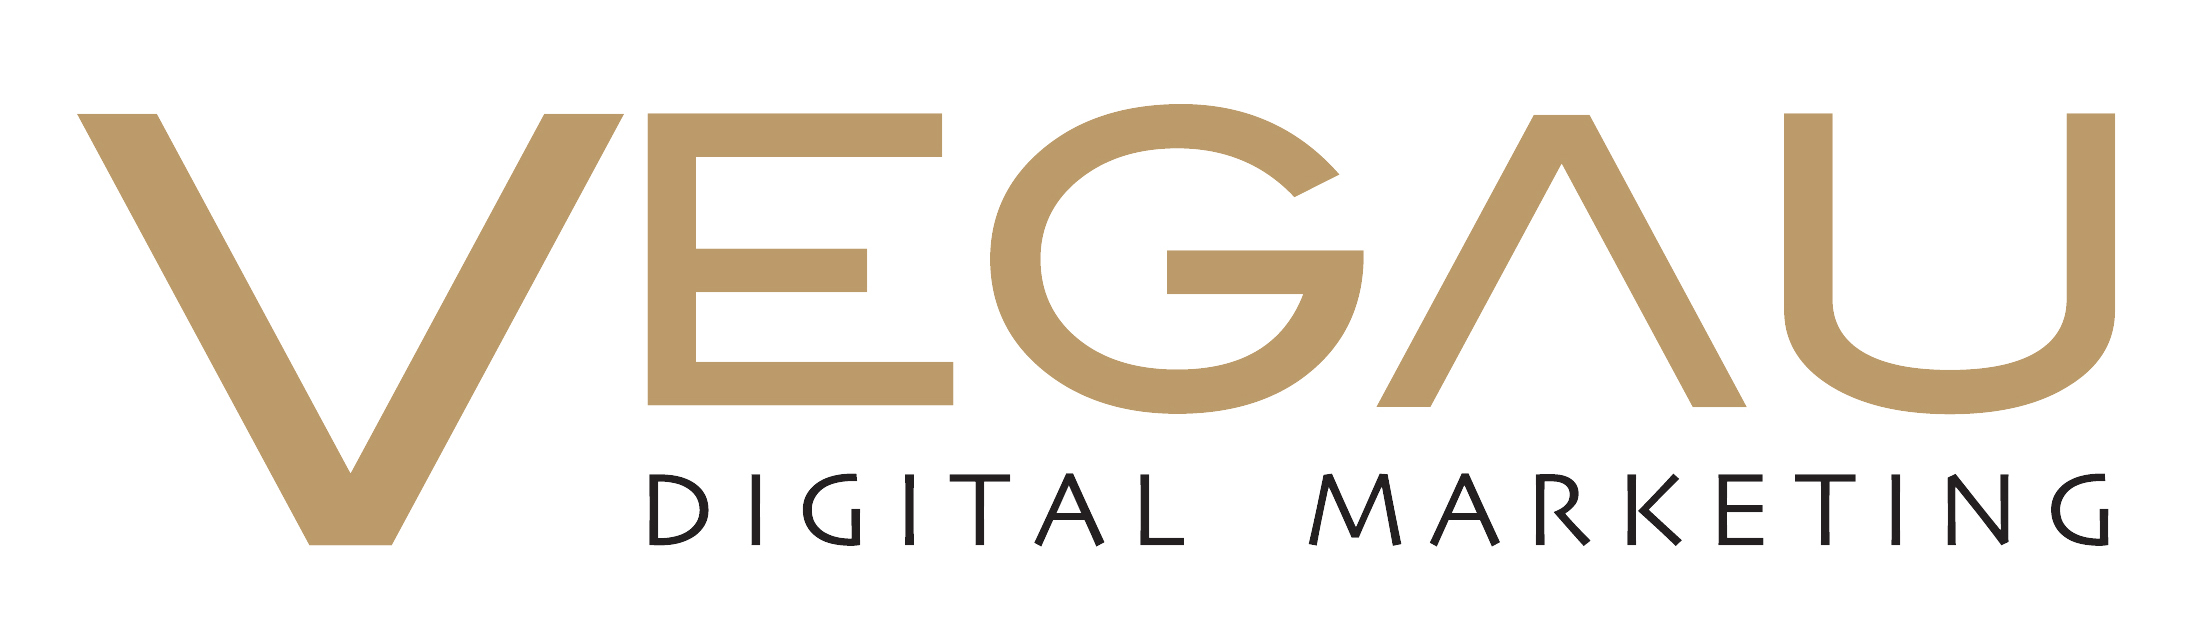 vegau digital logo